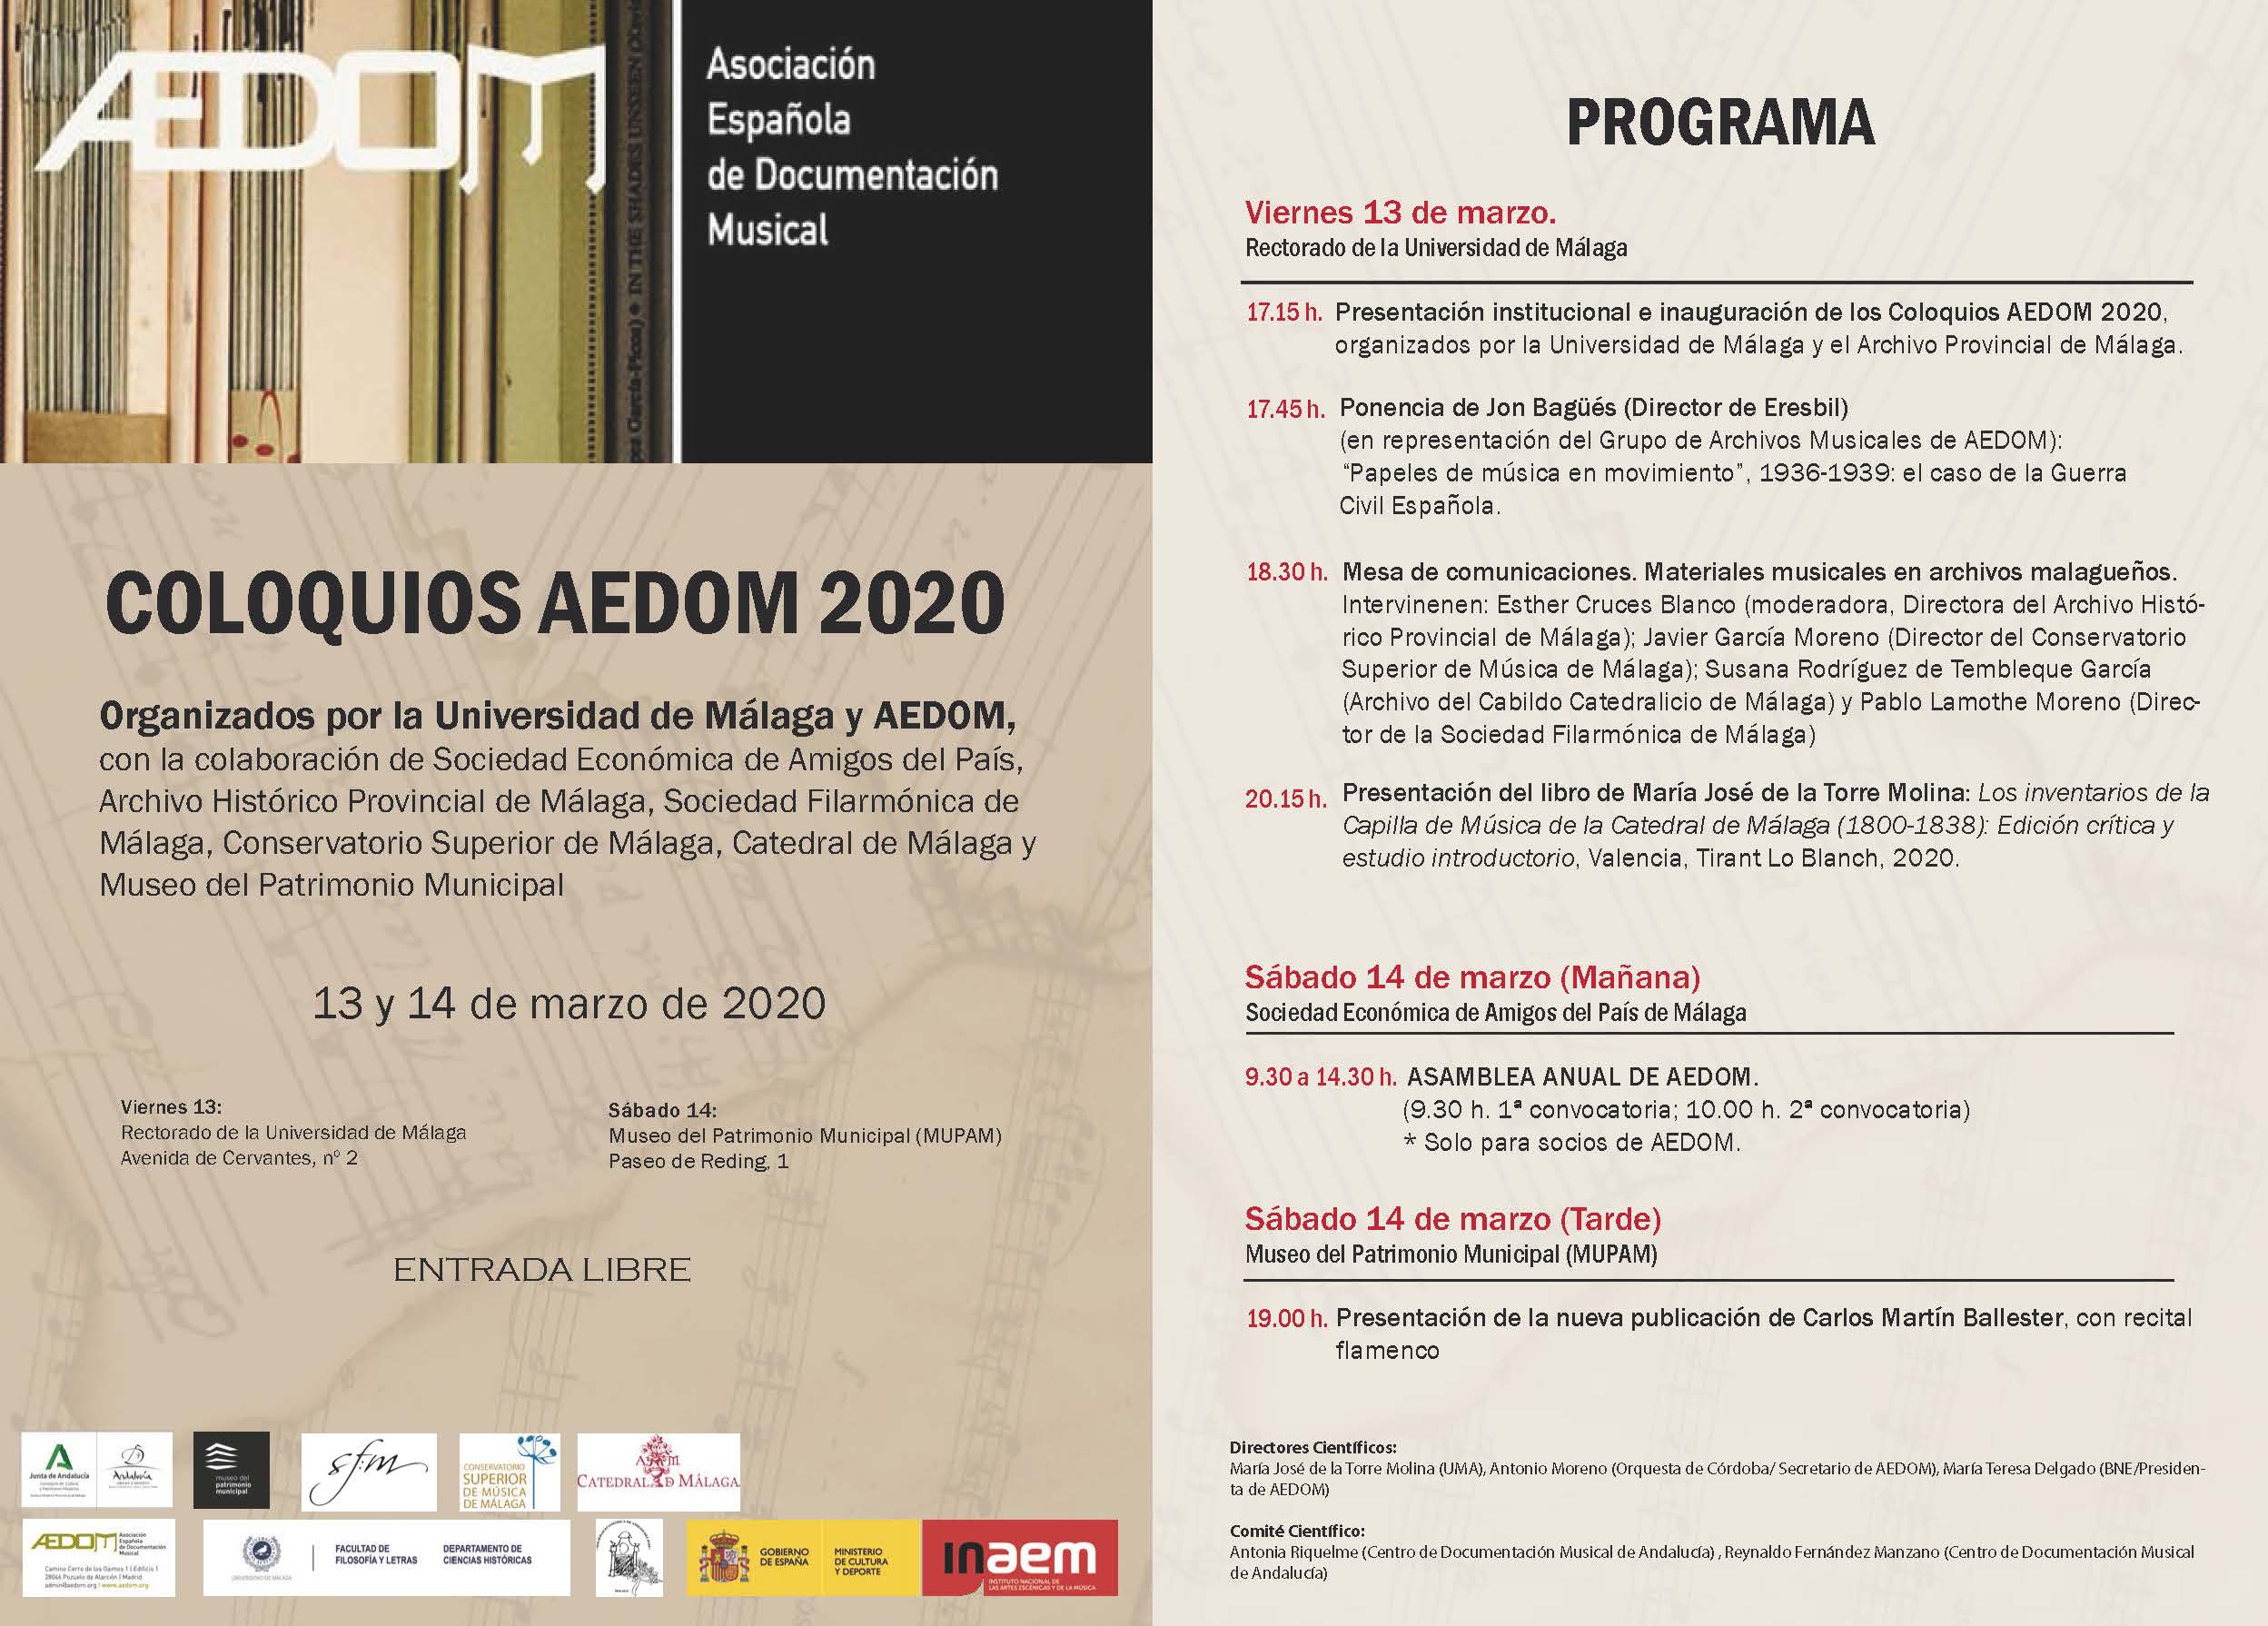 Cancelación de la asamblea anual de la Asociación Española de Documentación Musical (AEDOM)